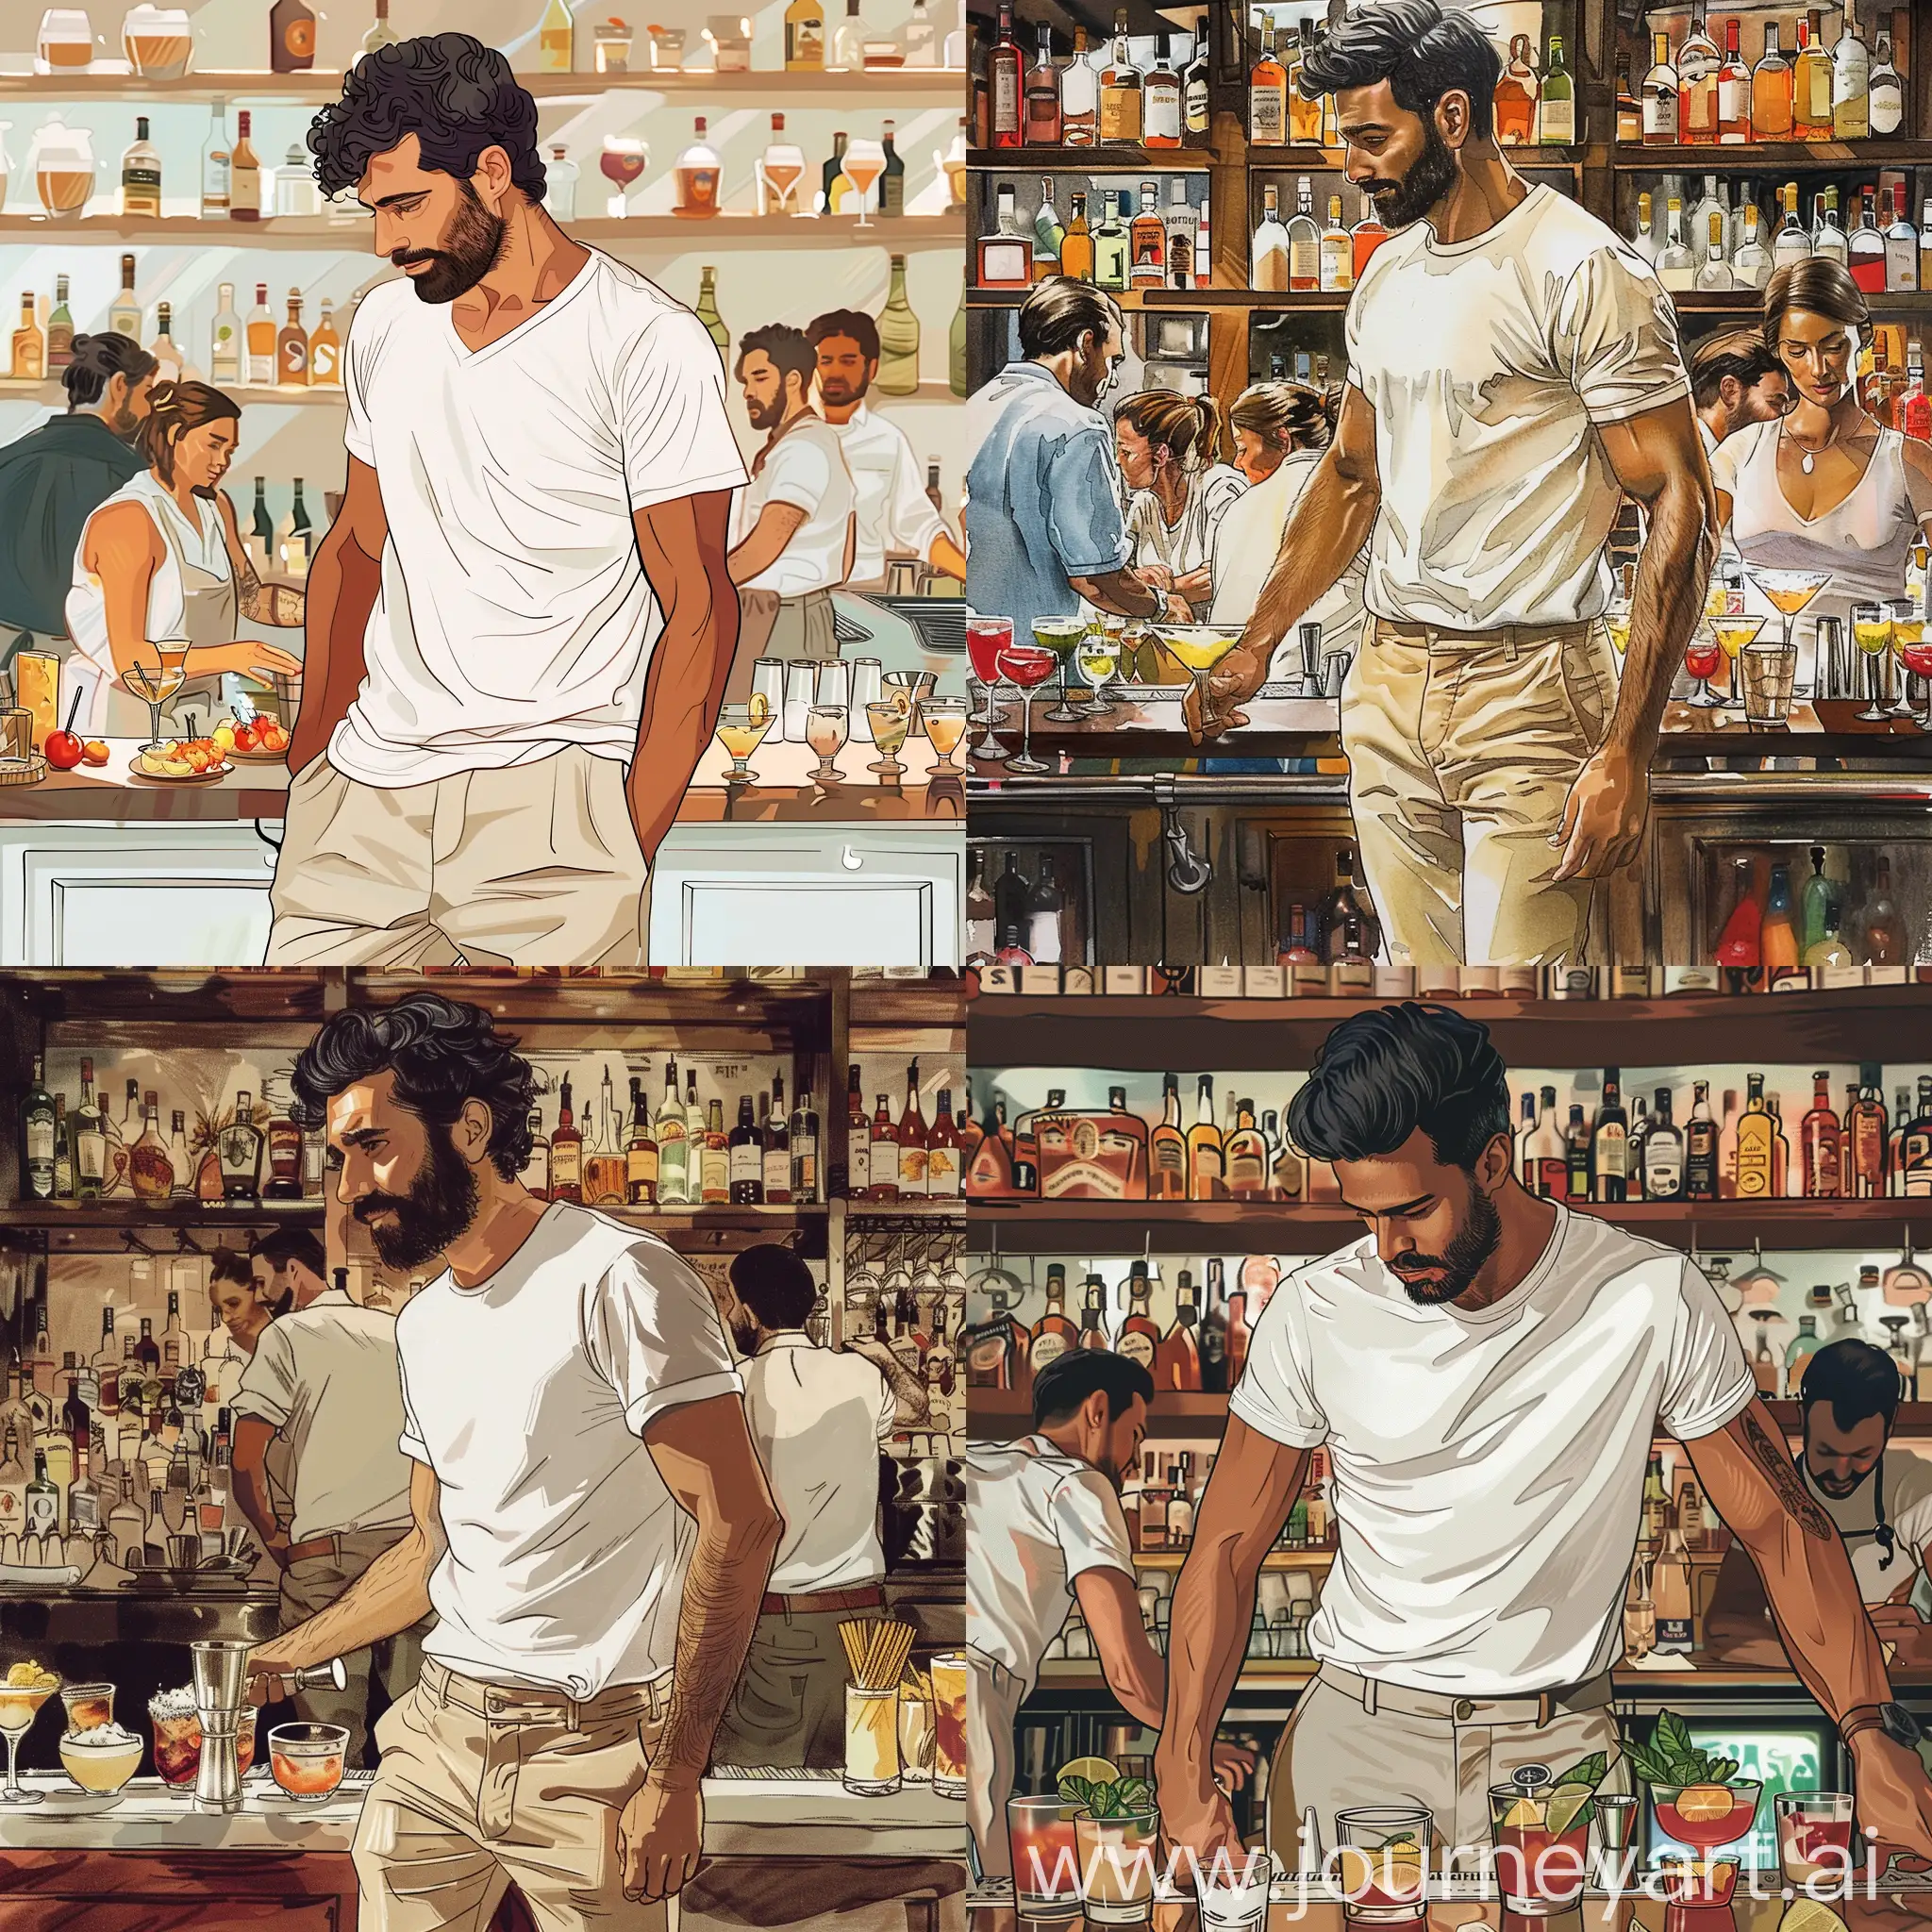 нарисуй бармена амира кармо, без бороды, темноволосого, в белой футболке и бежевых штанах, на работе за барной стойкой, вокруг много коктейлей и гостей